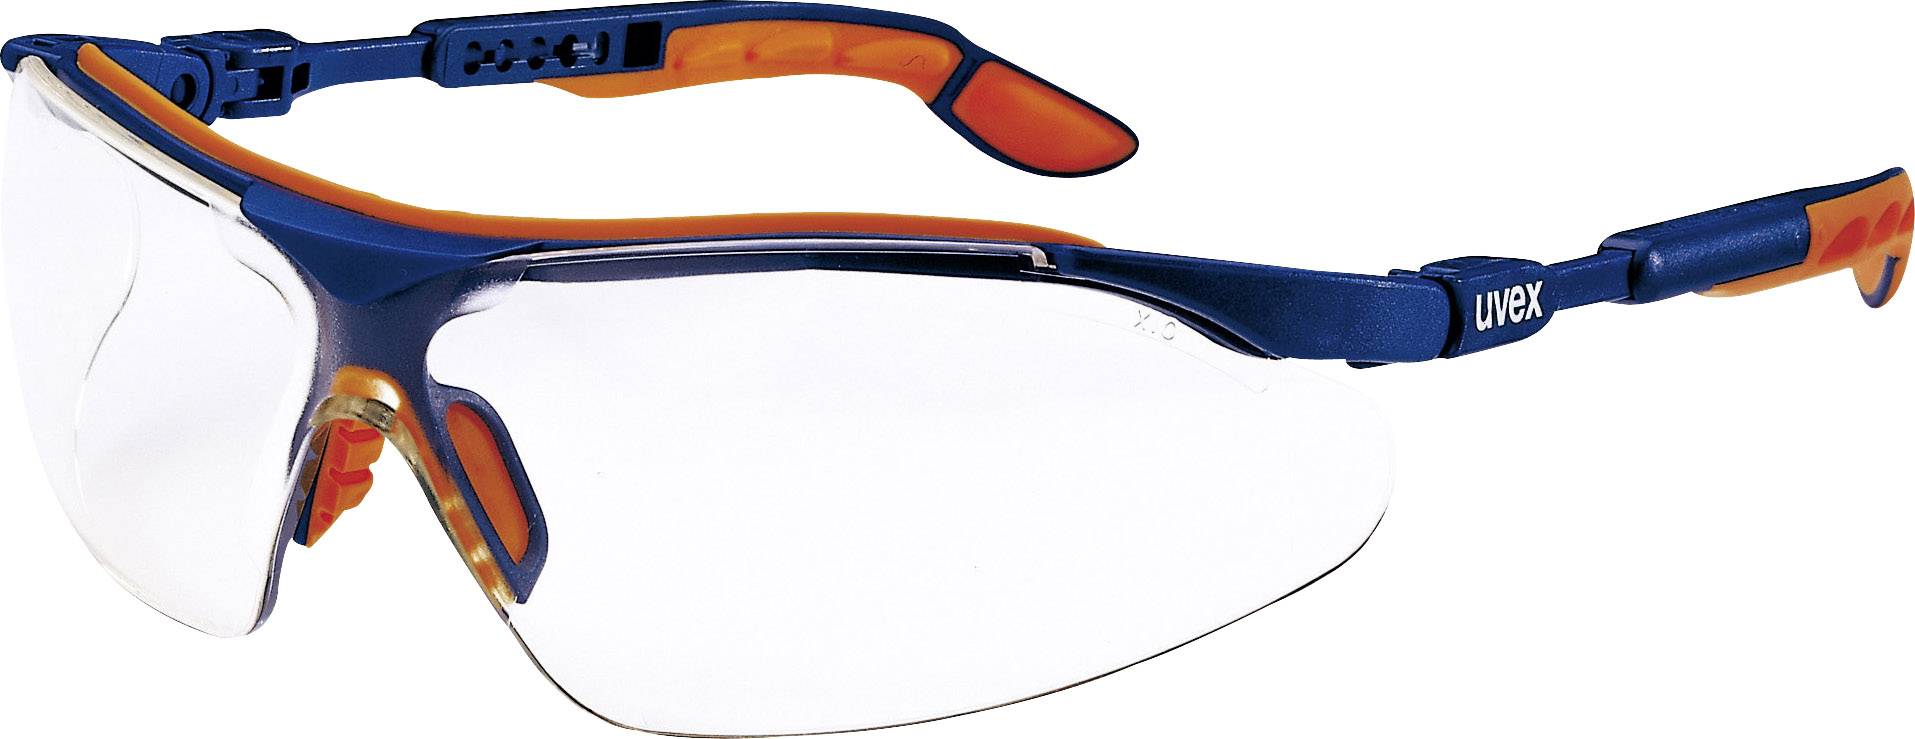 UVEX 9160265 Schutzbrille/Sicherheitsbrille Blau - Orange (9160265)